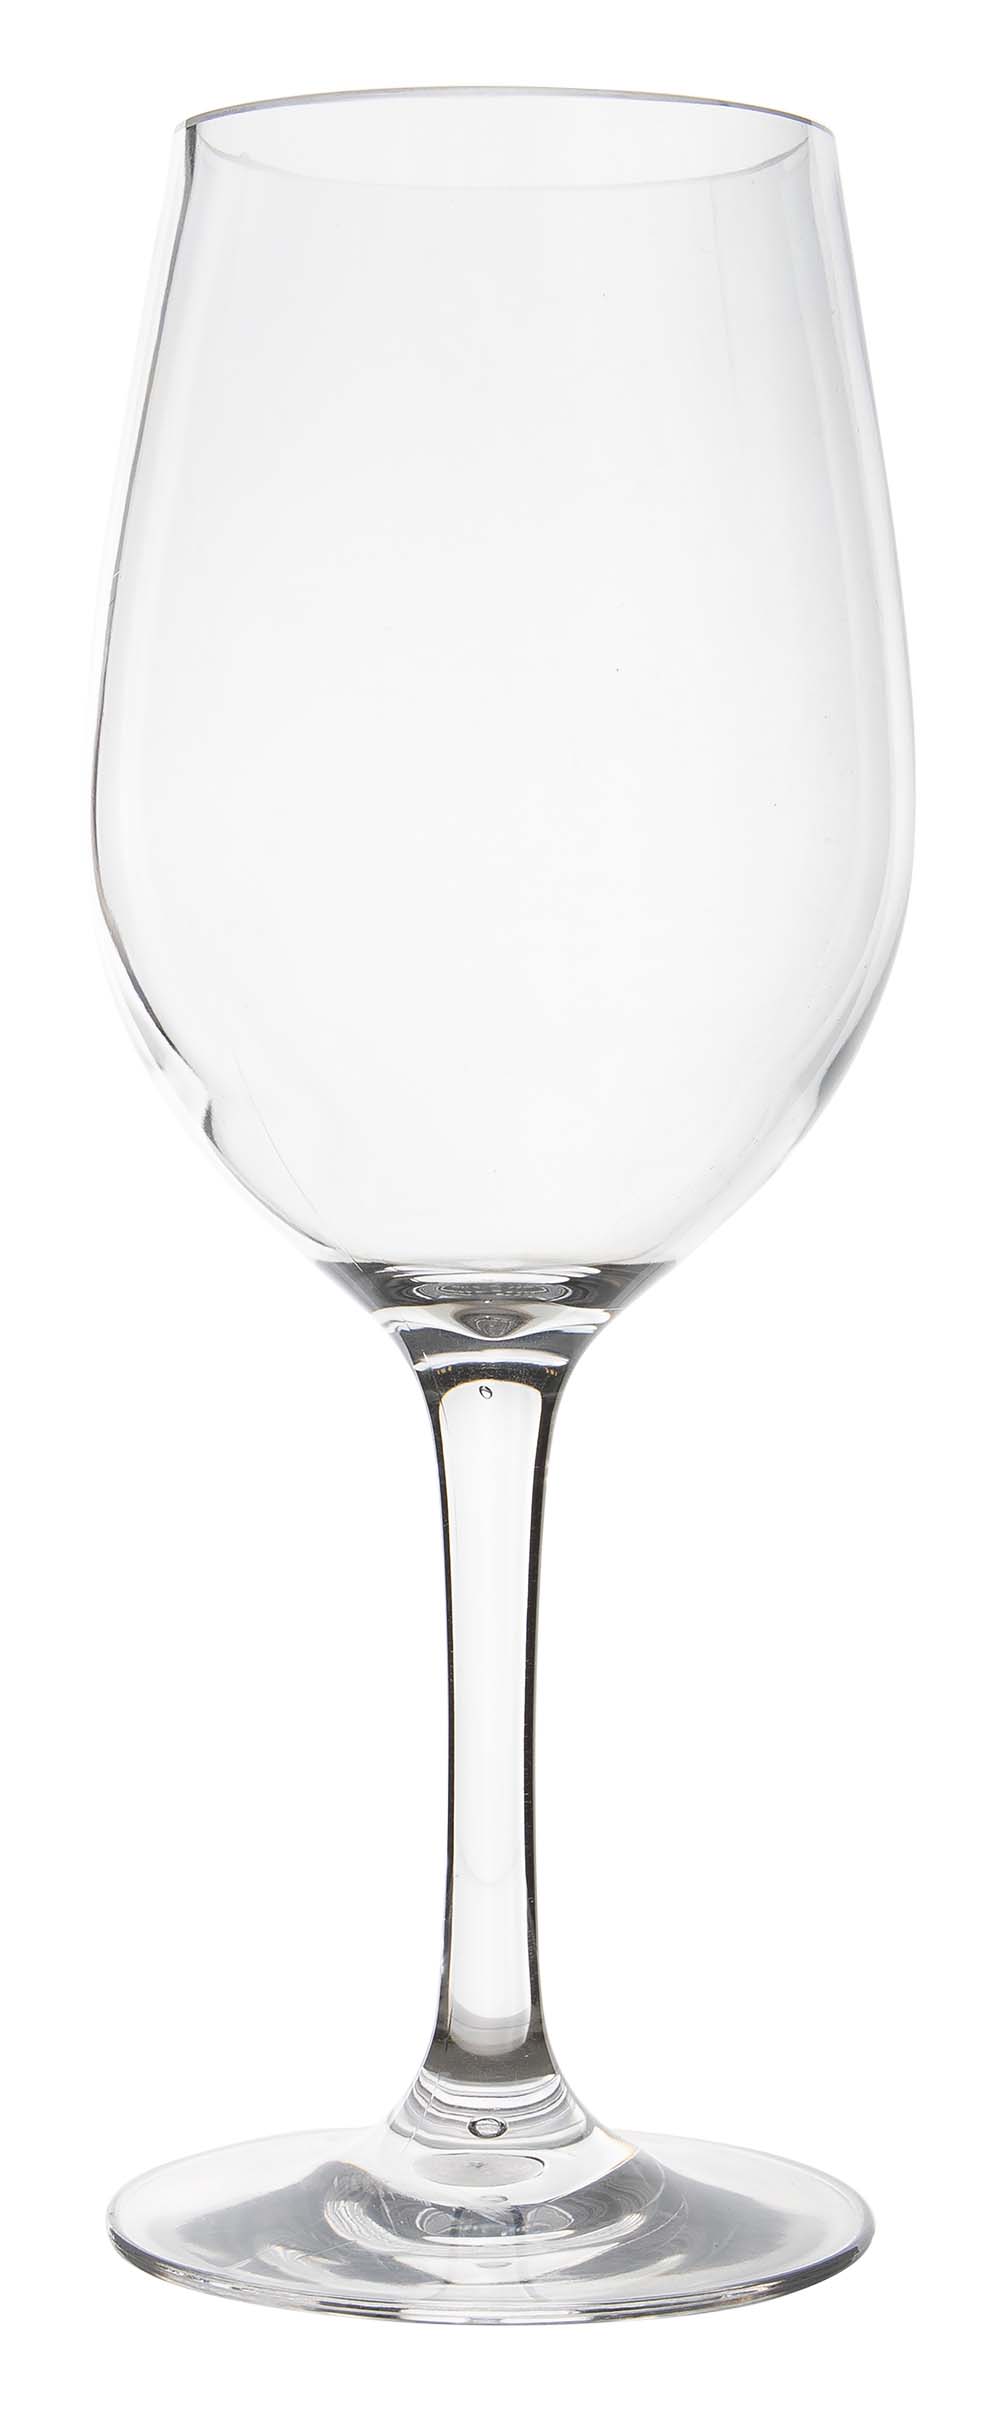 6915150 Een witte wijnglas uit de Linea line collectie. Vrijwel onbreekbaar door hoogwaardig MS materiaal. Bestaat uit een set van 2 stuks. Zeer gemakkelijk te reinigen en langdurig te gebruiken, wat het glas erg duurzaam maakt. Daarnaast is het witte wijnglas erg lichtgewicht en krasbestendig. Inhoud: 380 ml.